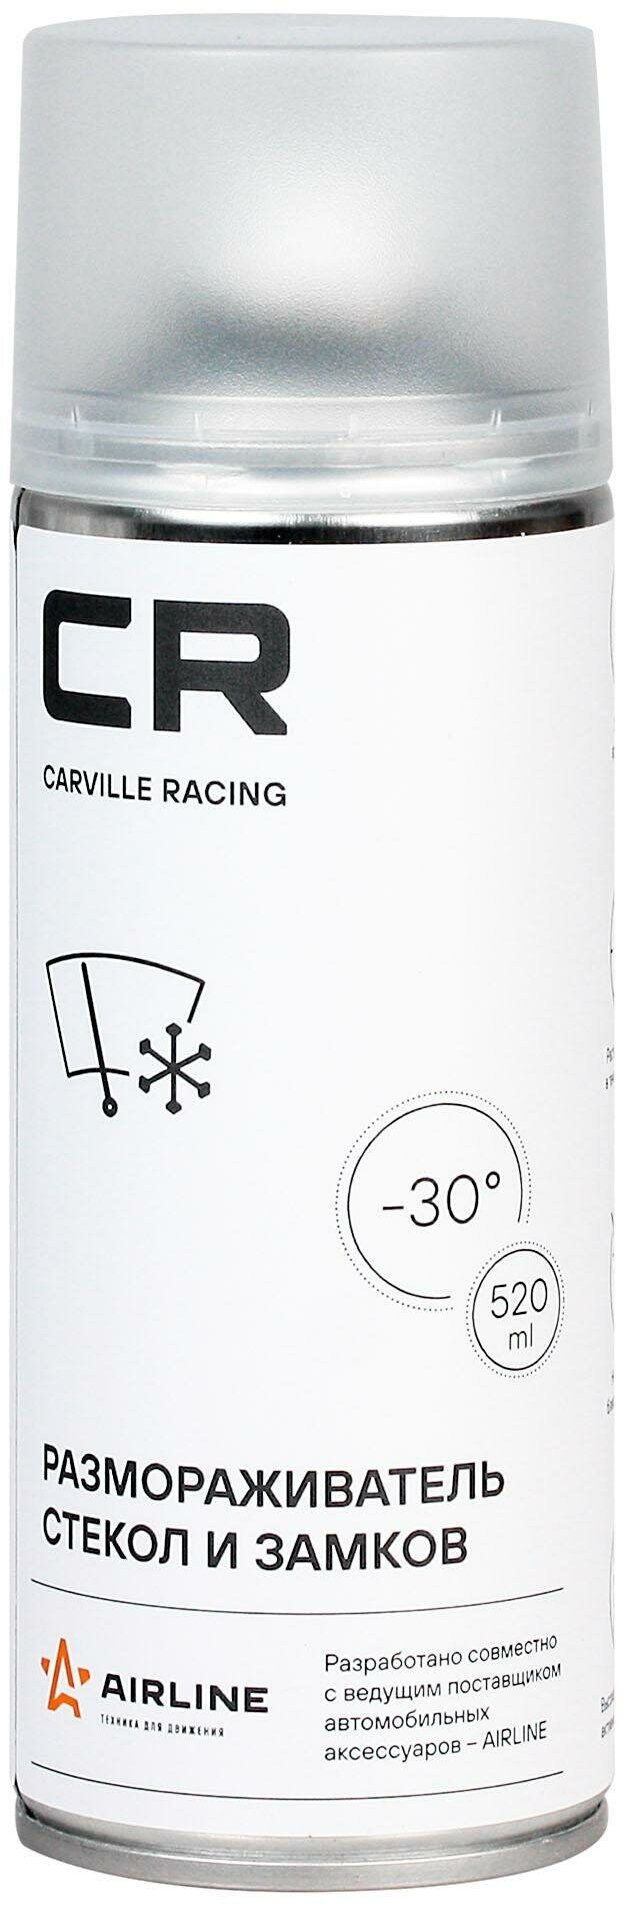 Размораживатель стекол и замков Carville Racing аэрозоль 520 мл CARVILLE RACING W0075521 | цена за 1 шт